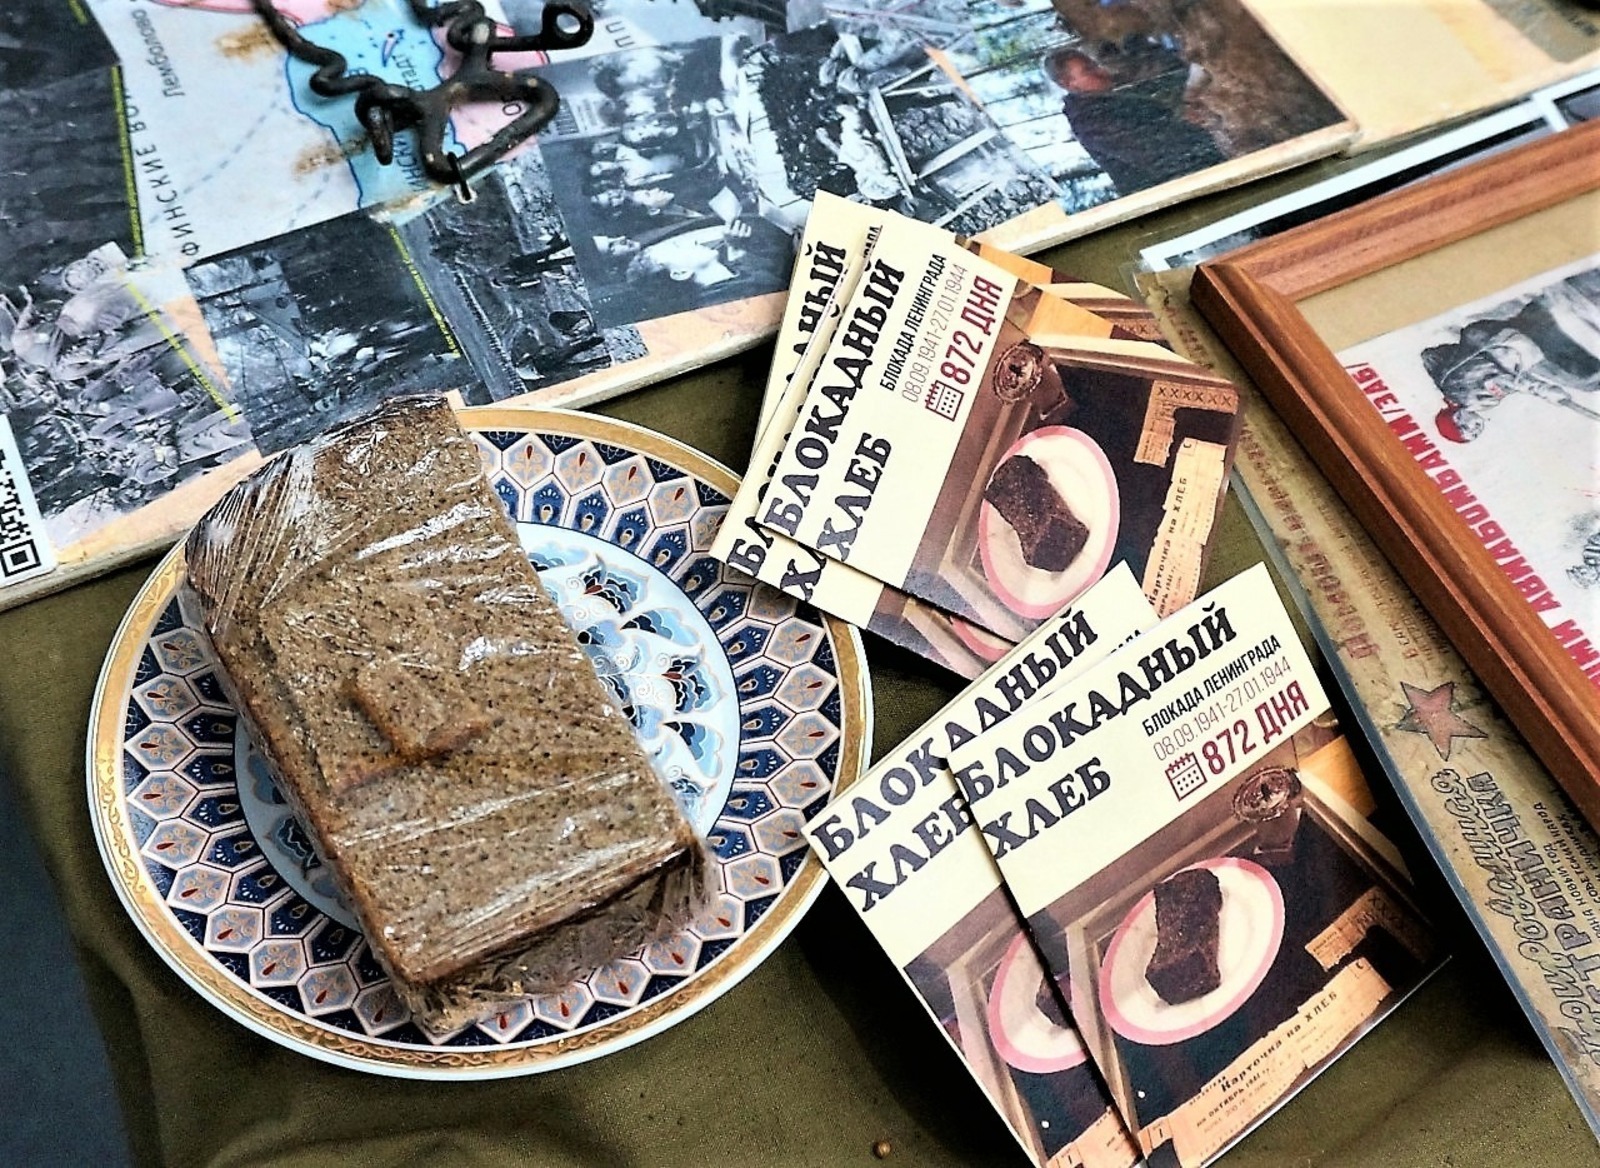 Передвижная тактильная выставка «Блокадный хлеб» открылась в  республиканской библиотеке для слепых имени М.Тухватшина